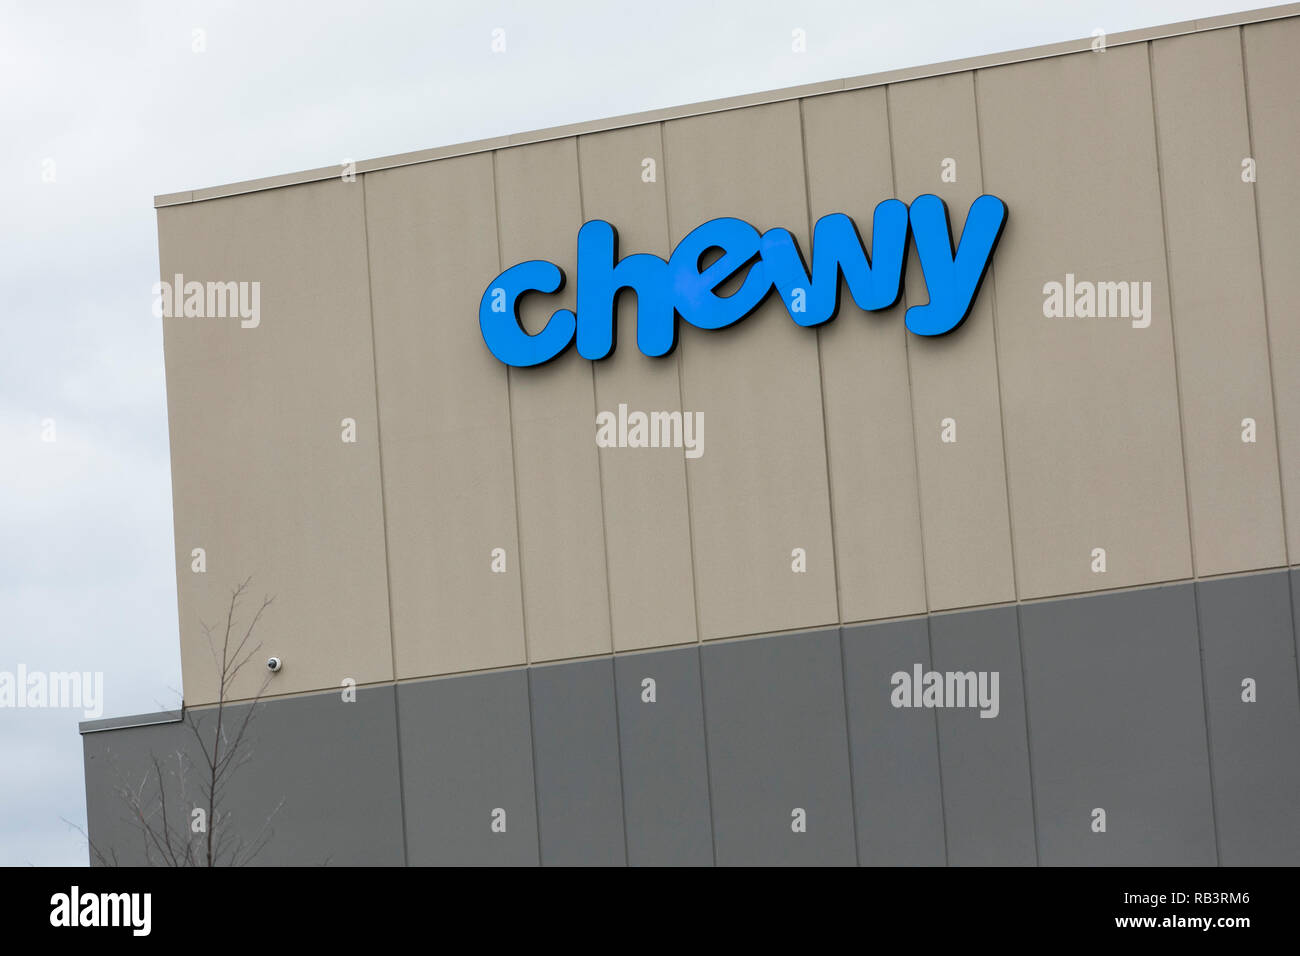 Ein logo Zeichen außerhalb einer Anlage von Chewy in Wilkes-Barre, Pennsylvania besetzt, am 29. Dezember 2018. Stockfoto